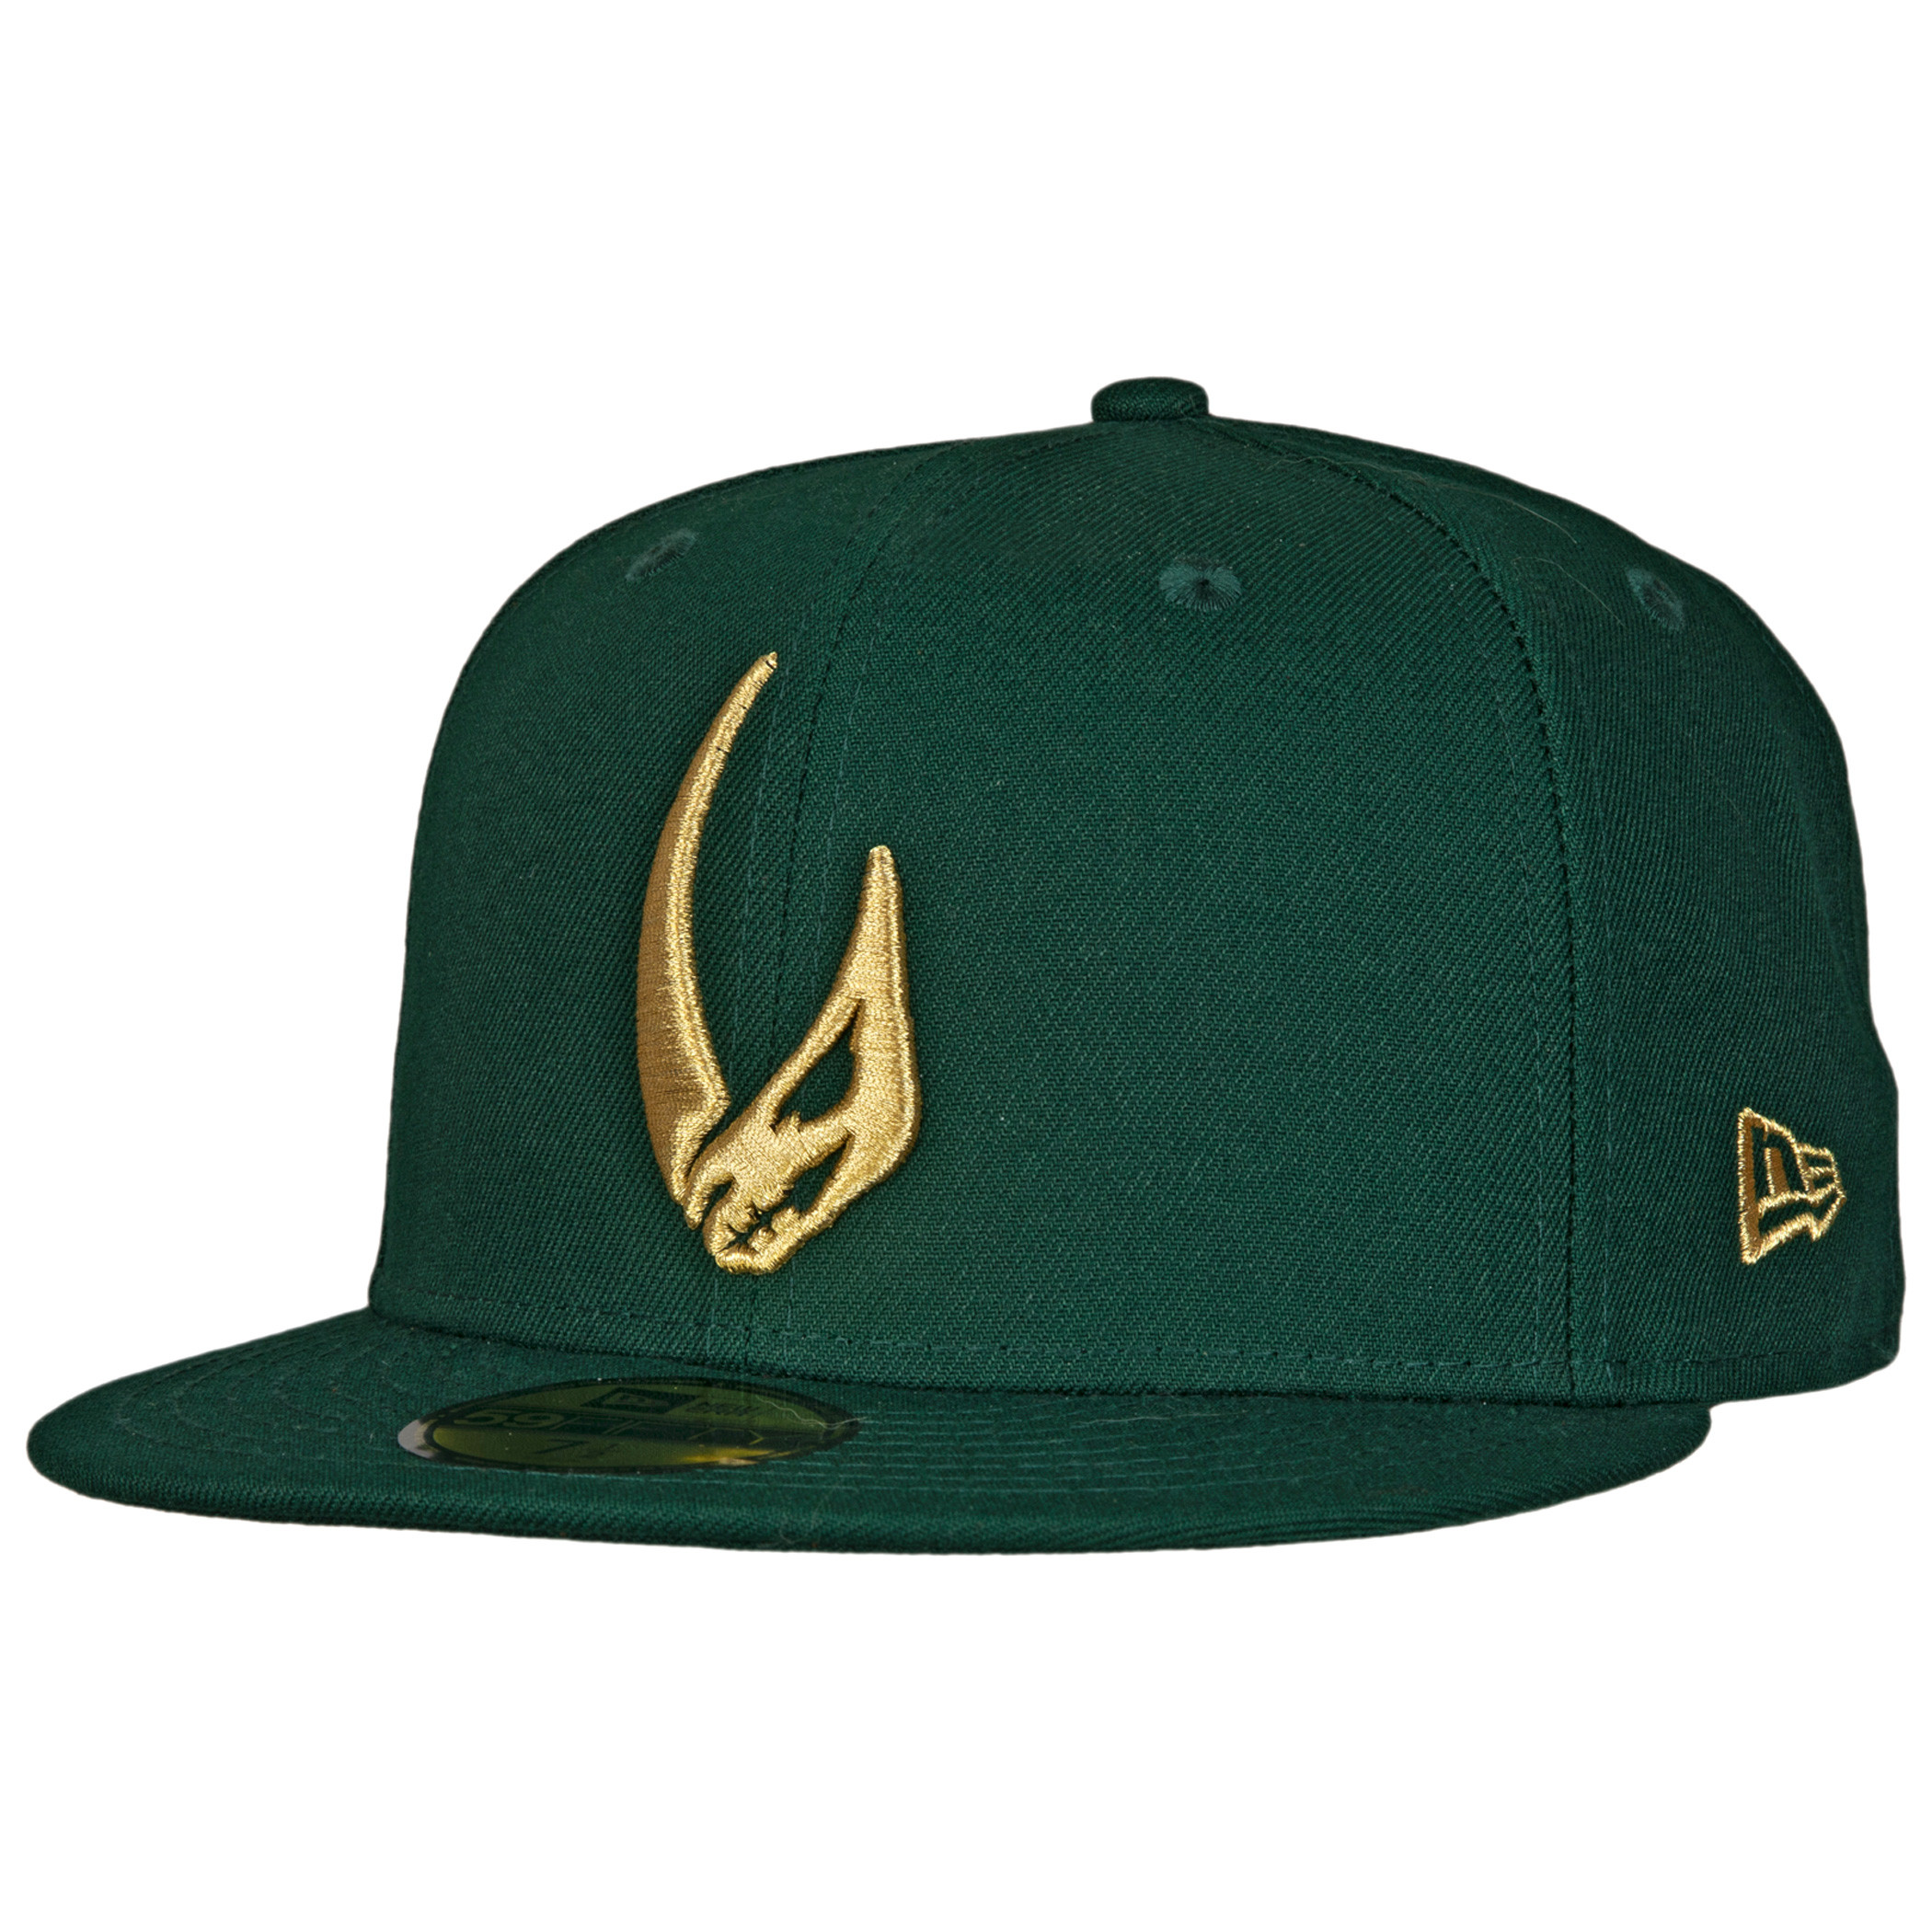 Star Wars Mandalorian Mudhorn Sigil Green New Era 59Fifty Fitted Hat